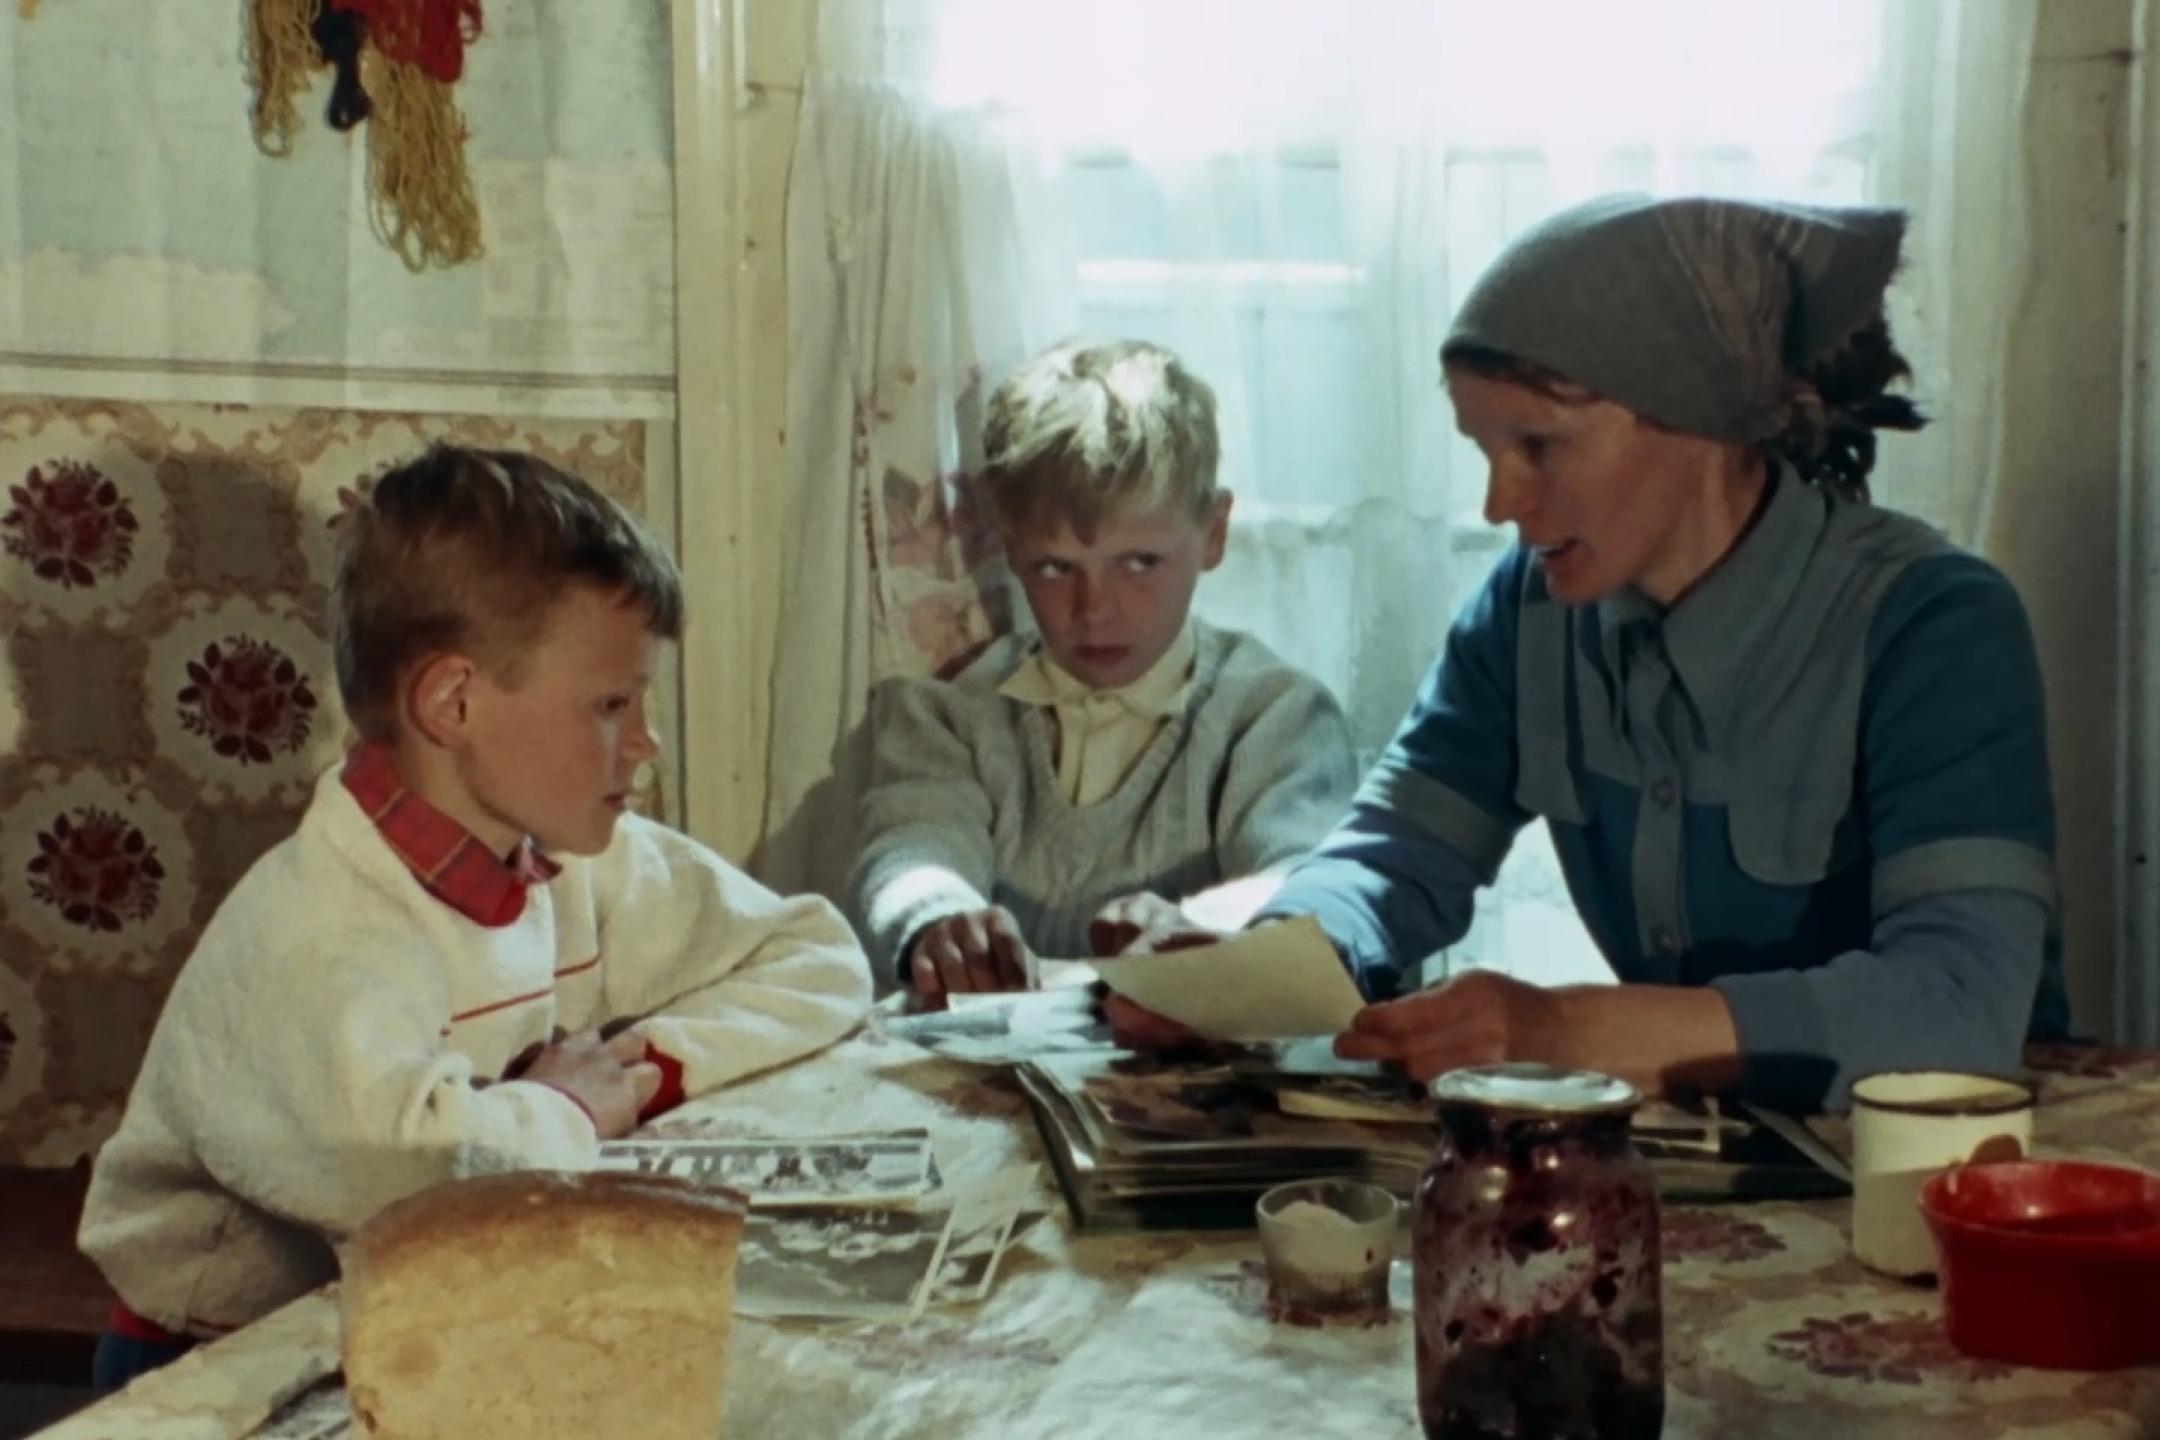 Eine Frau mit Kopftuch sitzt mit zwei Jungen an einem Tisch. Sie hält Fotos in der Hand.